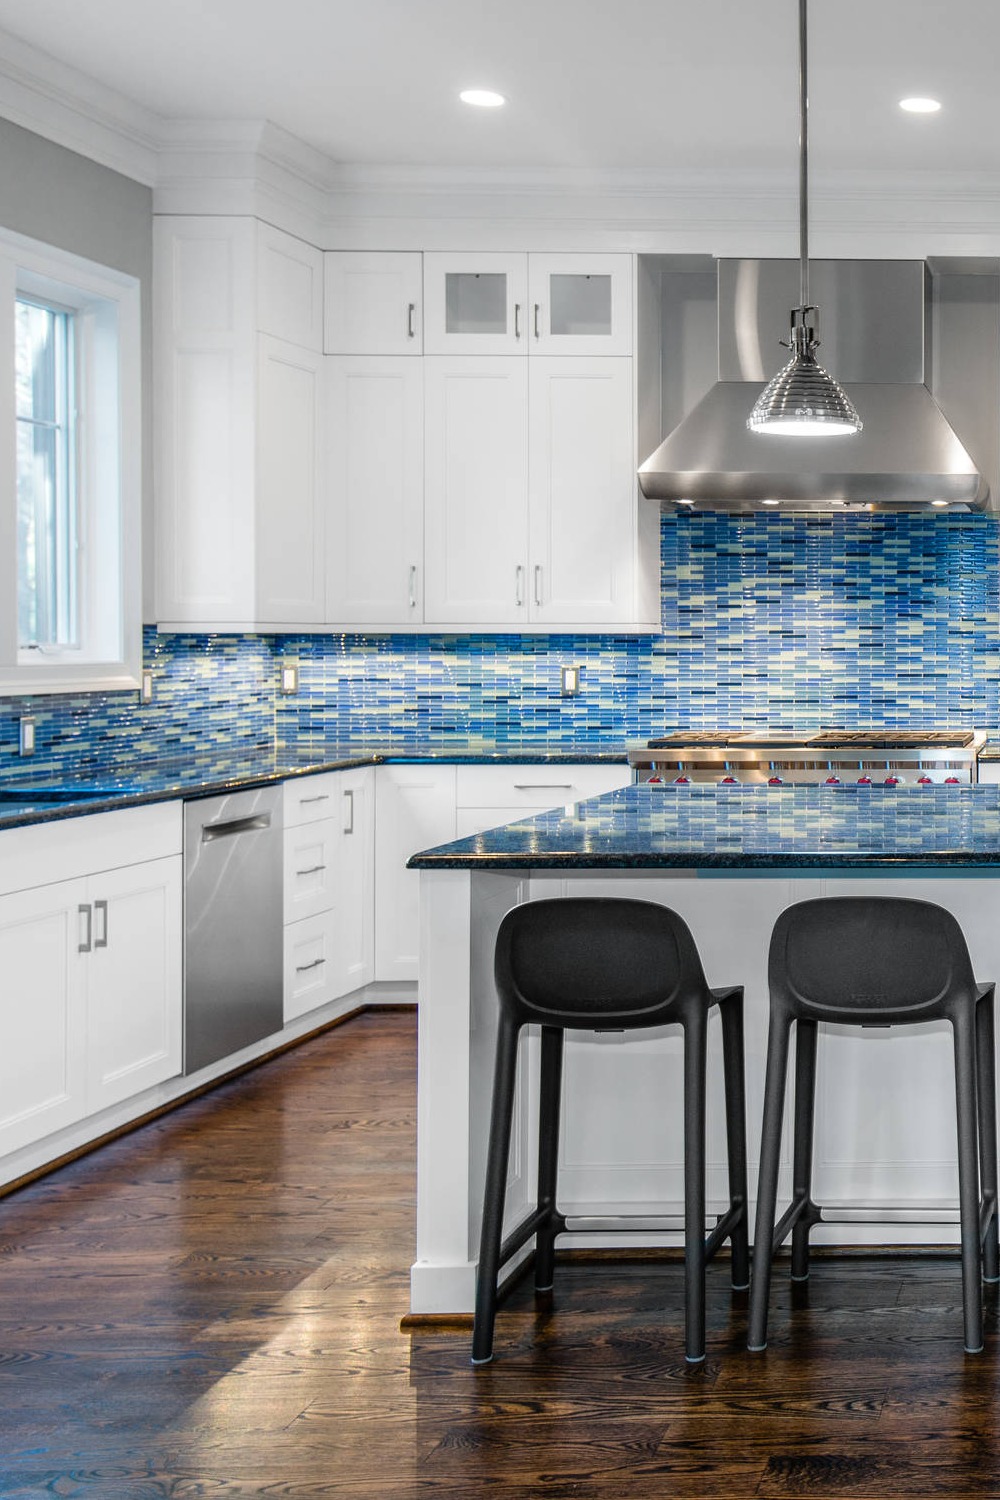 Blue Glass Tile Backsplash White Shaker Cabinets Undermount Sink Focal Point Kitchen Island White Kitchen Brick Tiles Dark Wood Floor